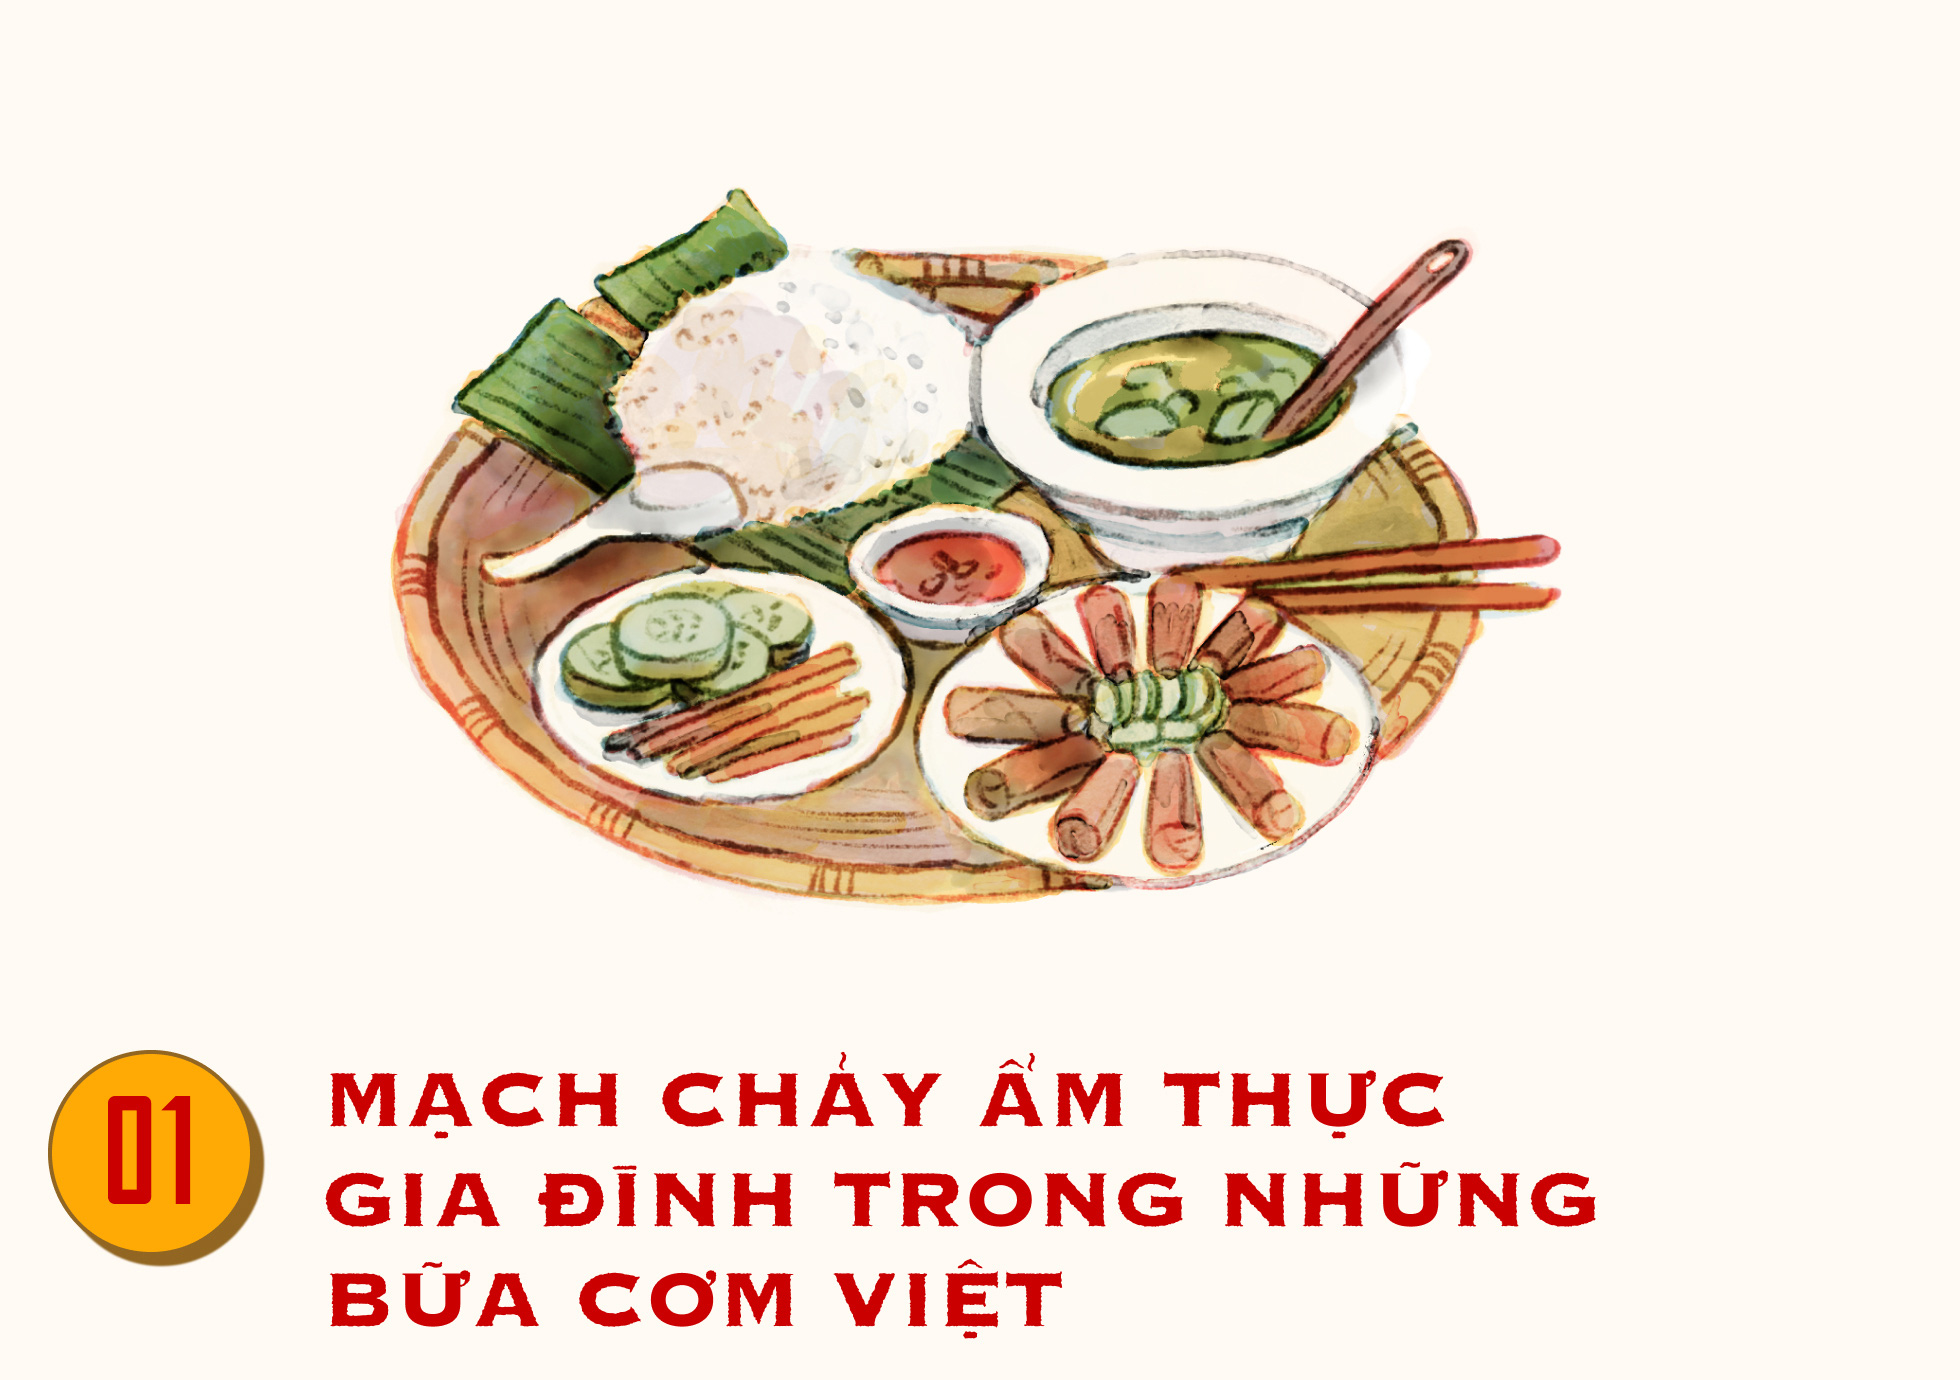 Bữa cơm Việt truyền thống luôn là niềm tự hào của mỗi người Việt Nam. Với đầy đủ các món ăn đa dạng, phong phú và đặc trưng của vùng miền, bữa cơm này sẽ khiến bạn cảm thấy tự hào về nền ẩm thực của quê hương mình. Hãy xem hình ảnh bữa cơm Việt truyền thống để khám phá thêm về văn hóa ẩm thực Việt Nam.